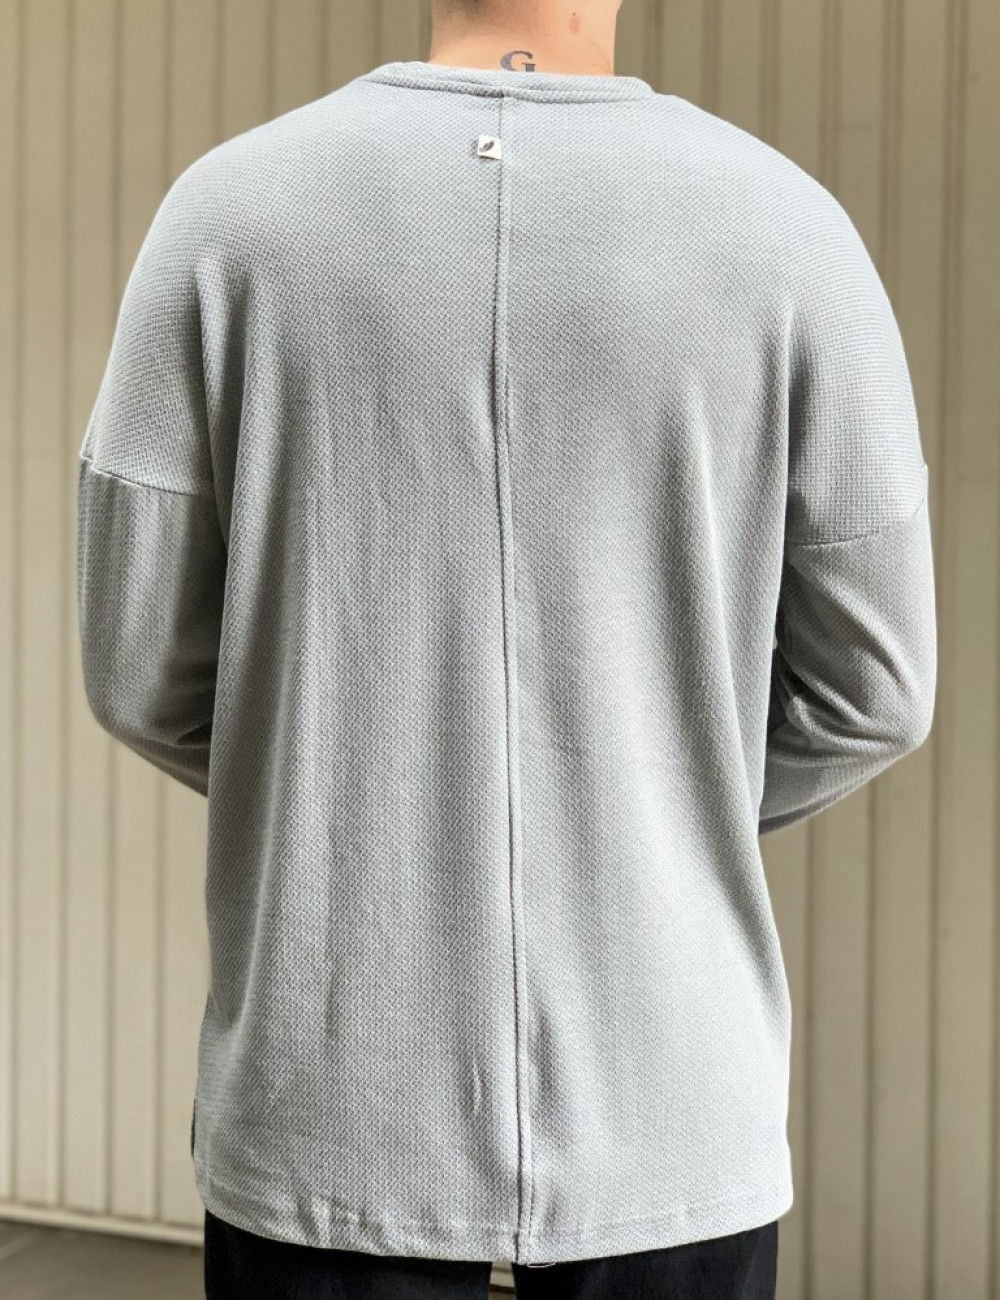 Ανδρική γκρι μακρυμάνικη oversized μπλούζα με ανάγλυφο ύφασμα 1920G